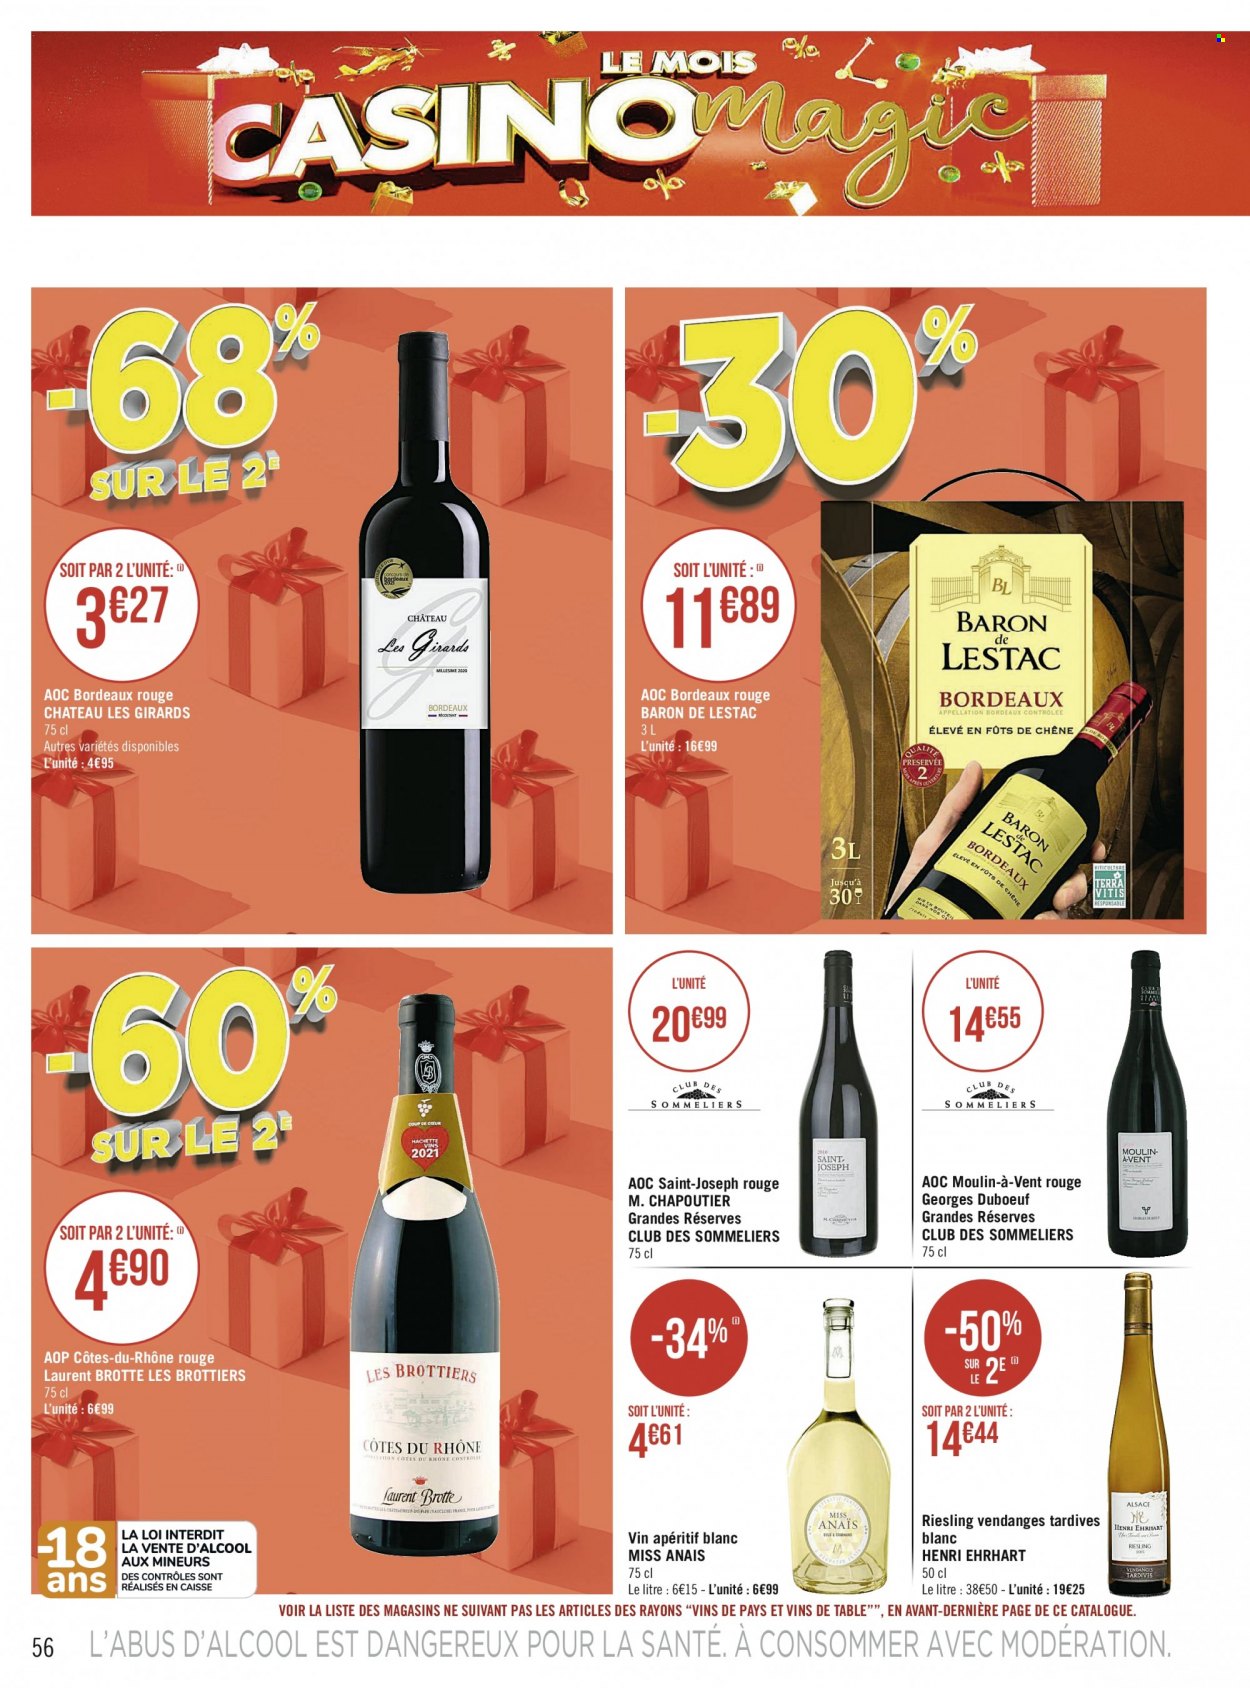 thumbnail - Catalogue Géant Casino - Produits soldés - Bordeaux, vin blanc, vin rouge, vin, Riesling, apéritif. Page 56.